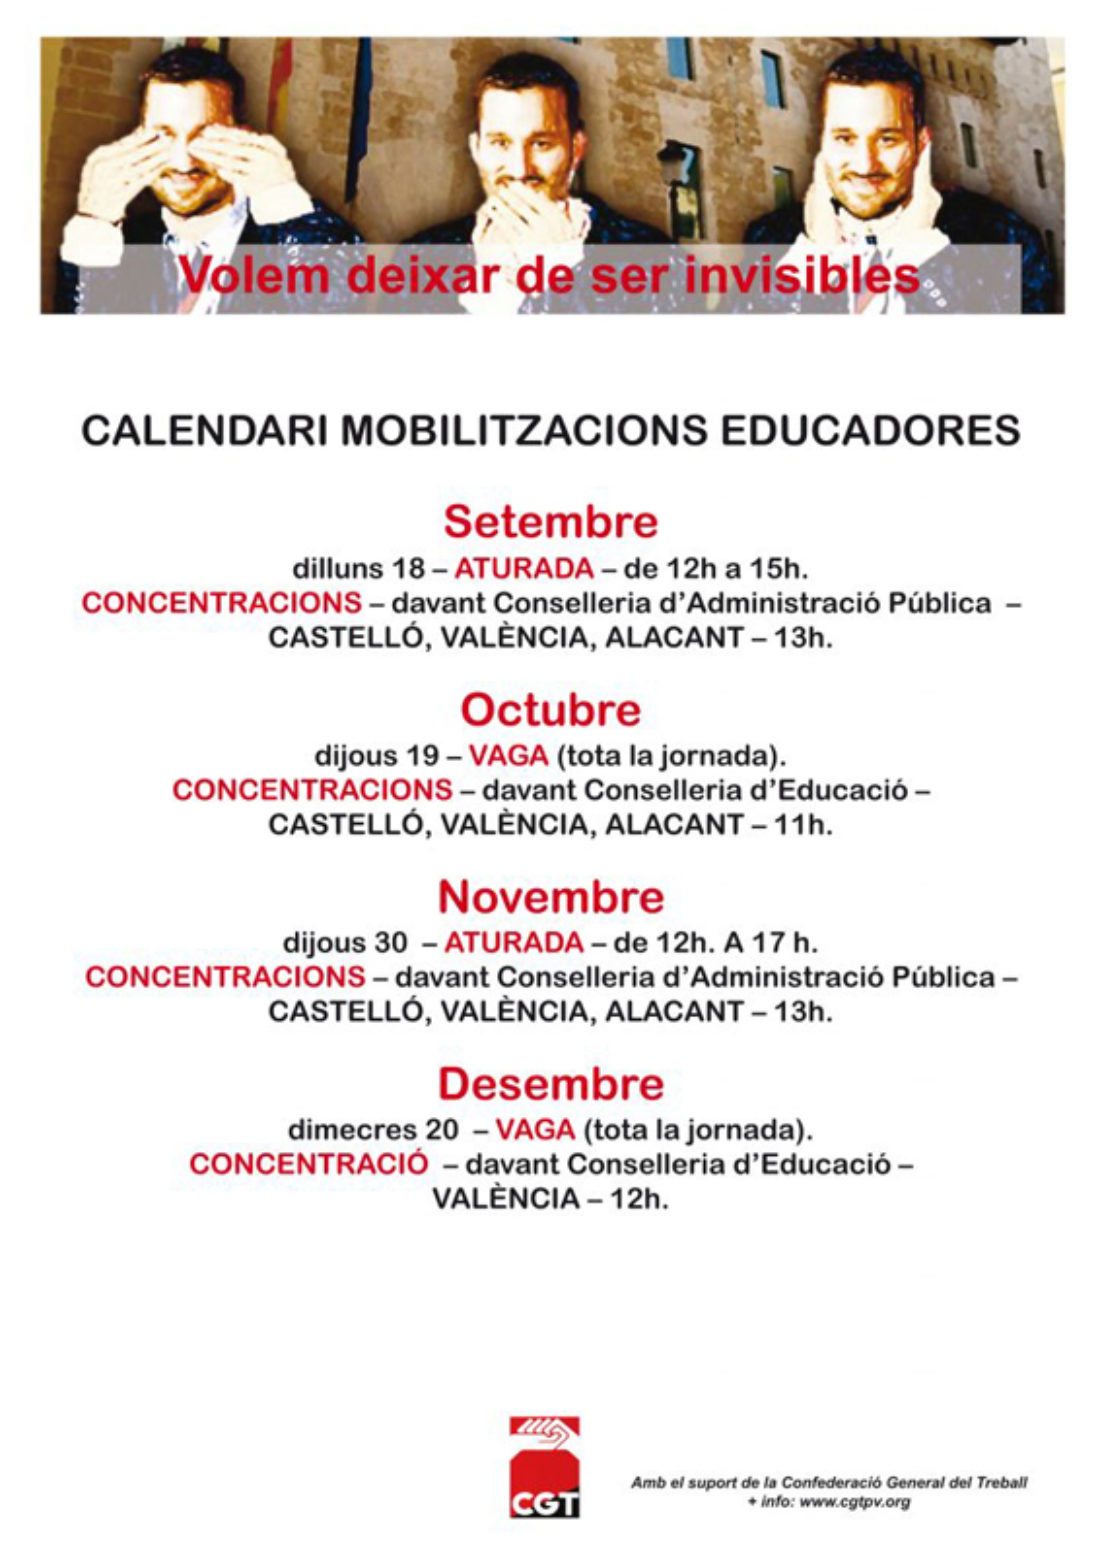 Calendario de movilizaciones de las educadoras en el País Valencià